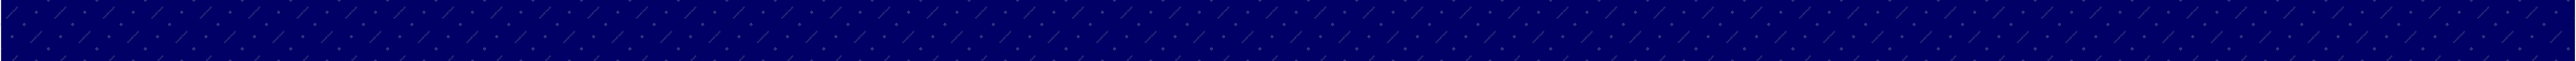 blue tabletop Illustration in PNG, SVG